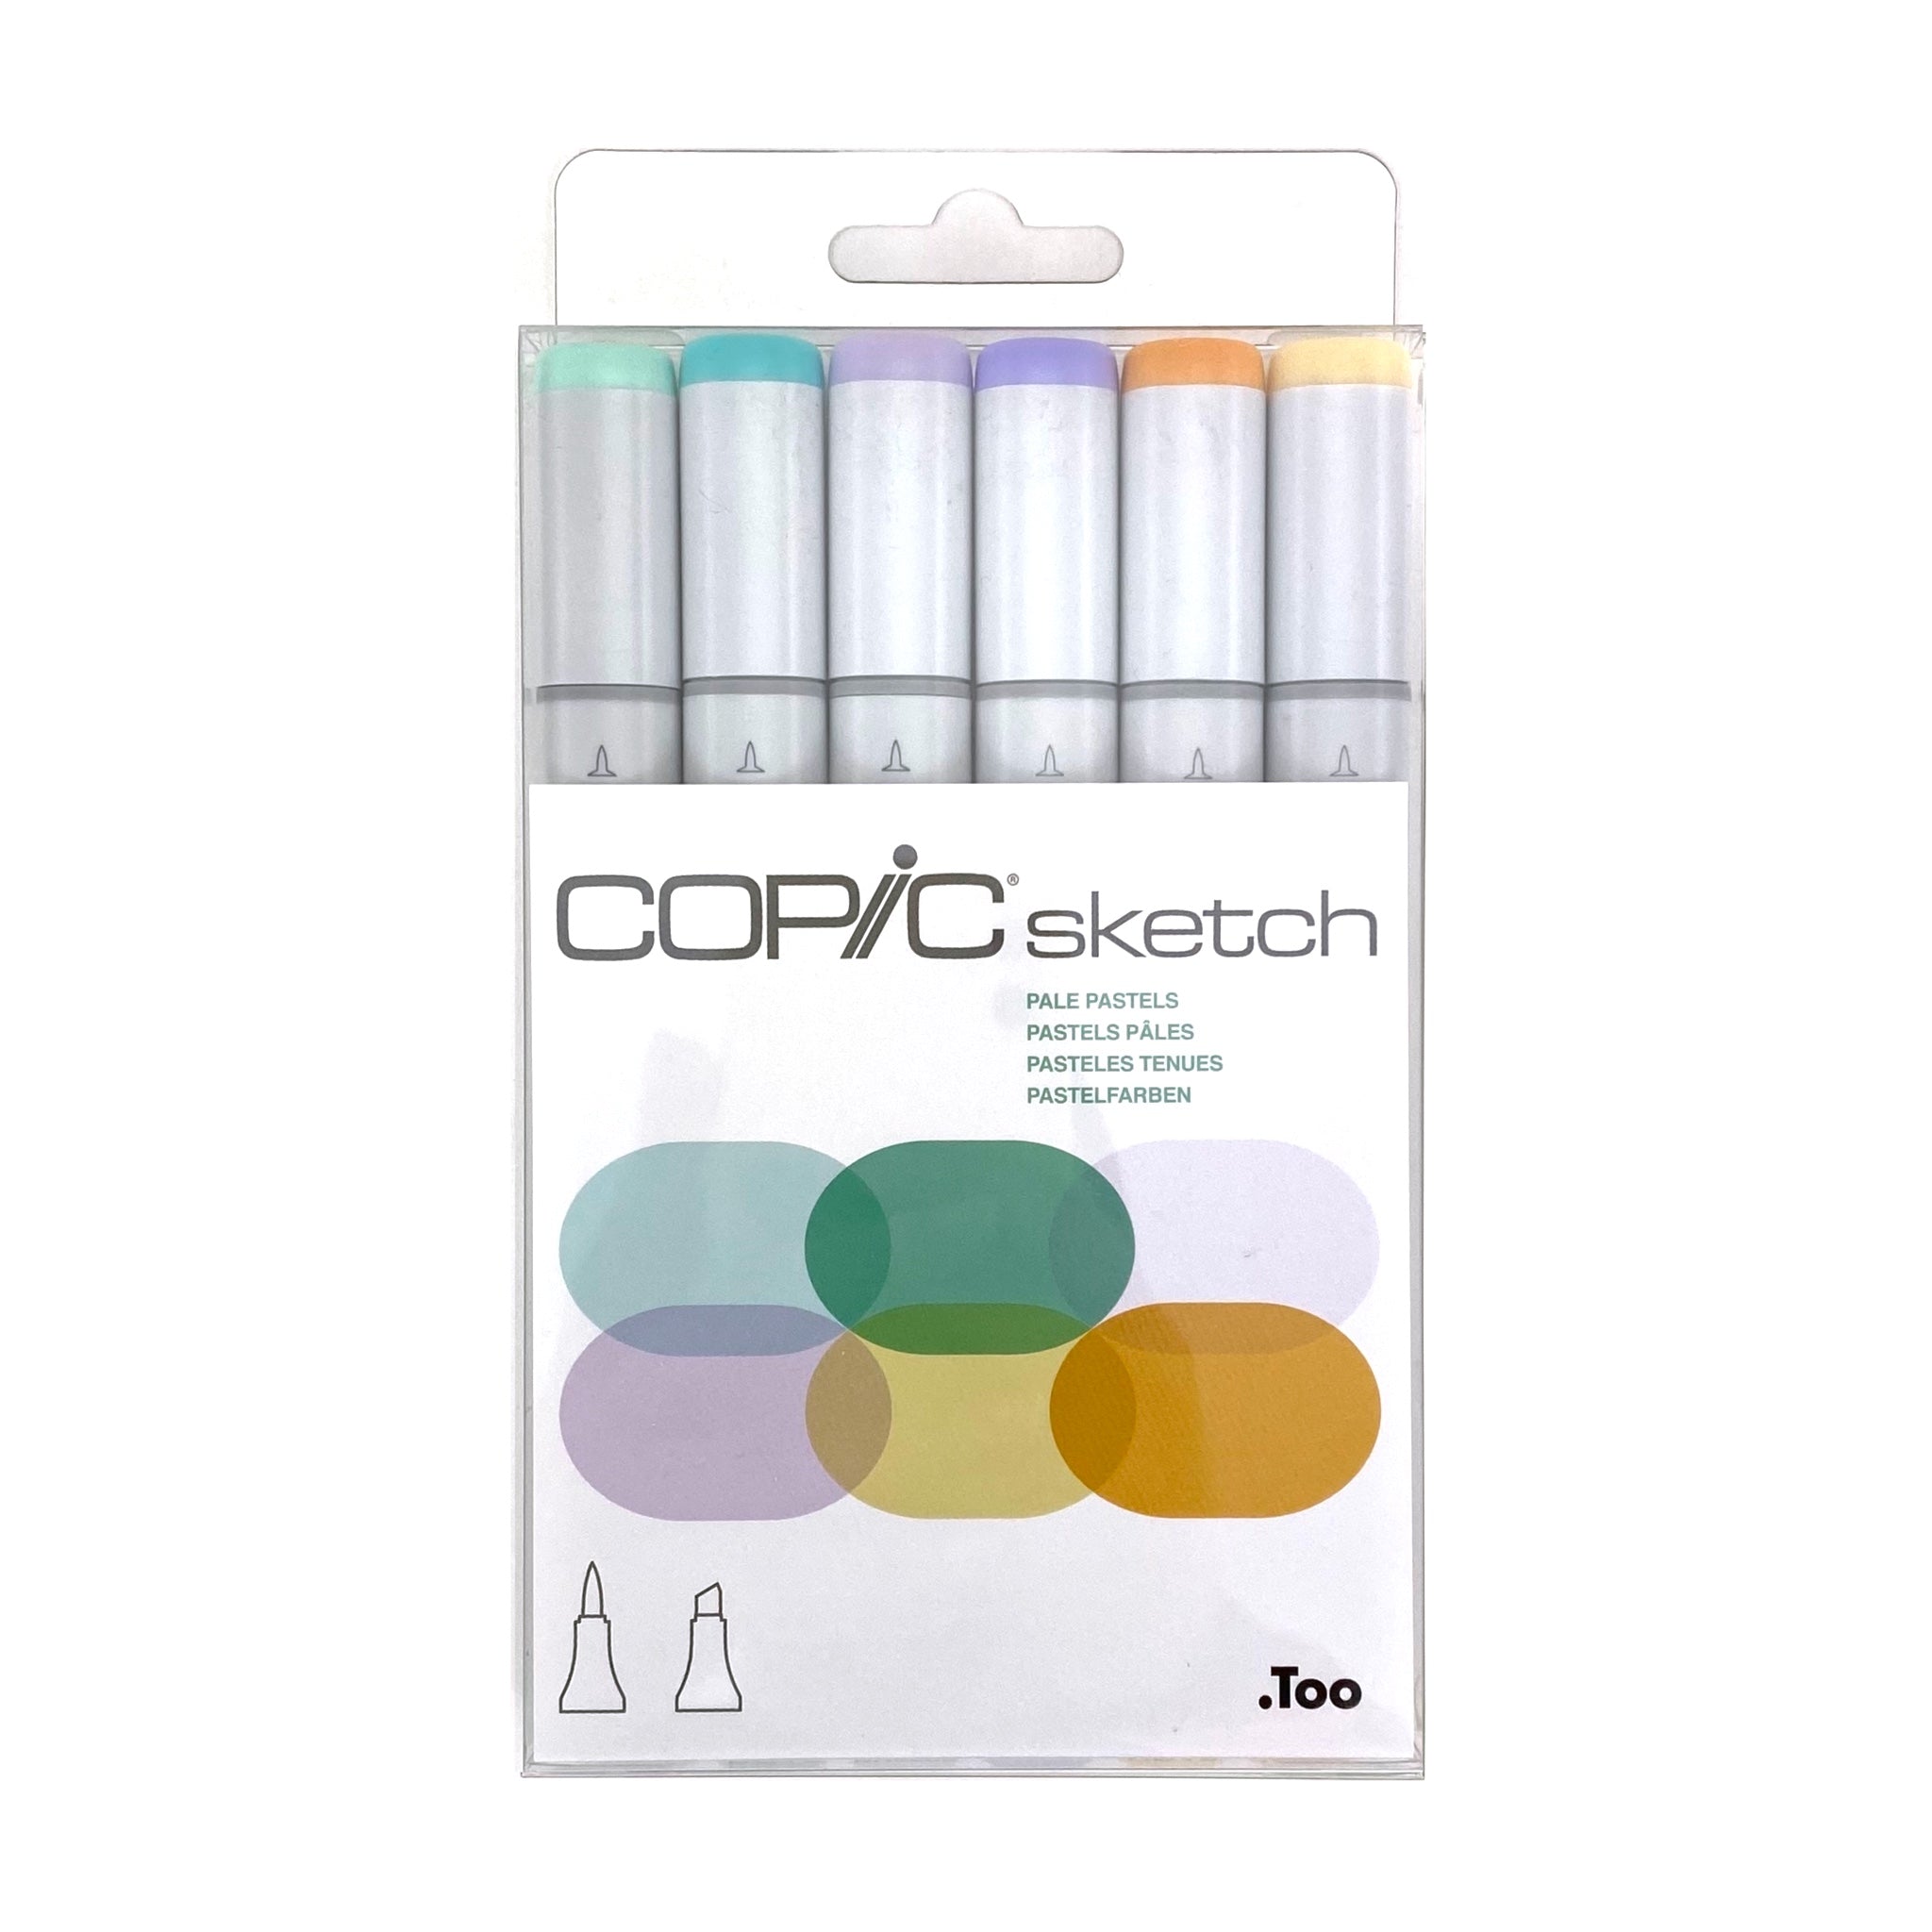 Copic Sketch Marker Set 24 Colors – Japanese Taste